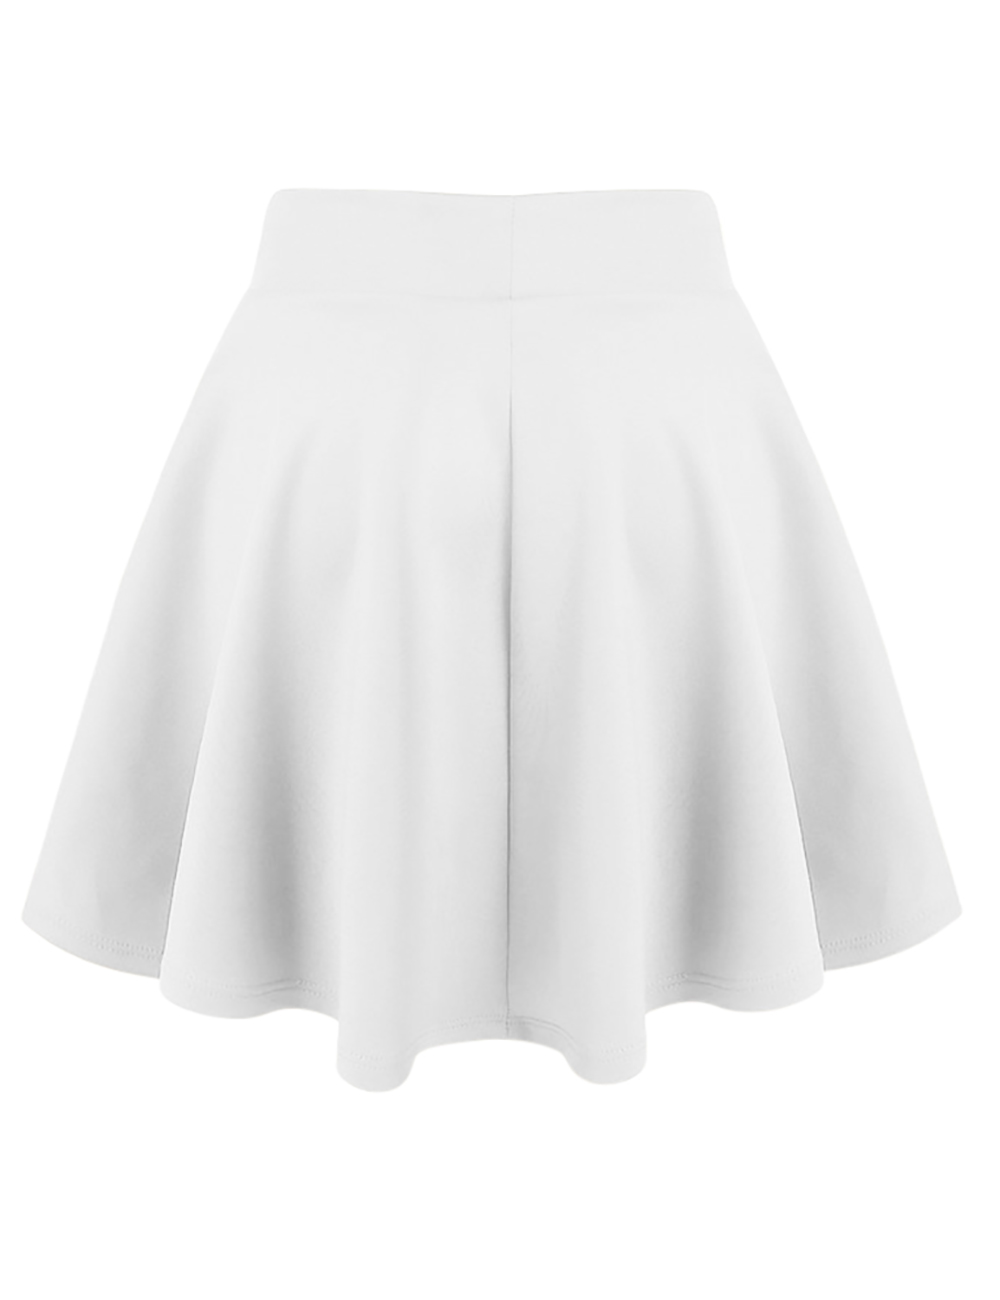 Womens-White-Skater-Skirt-A-Line-Flared-Skirt-